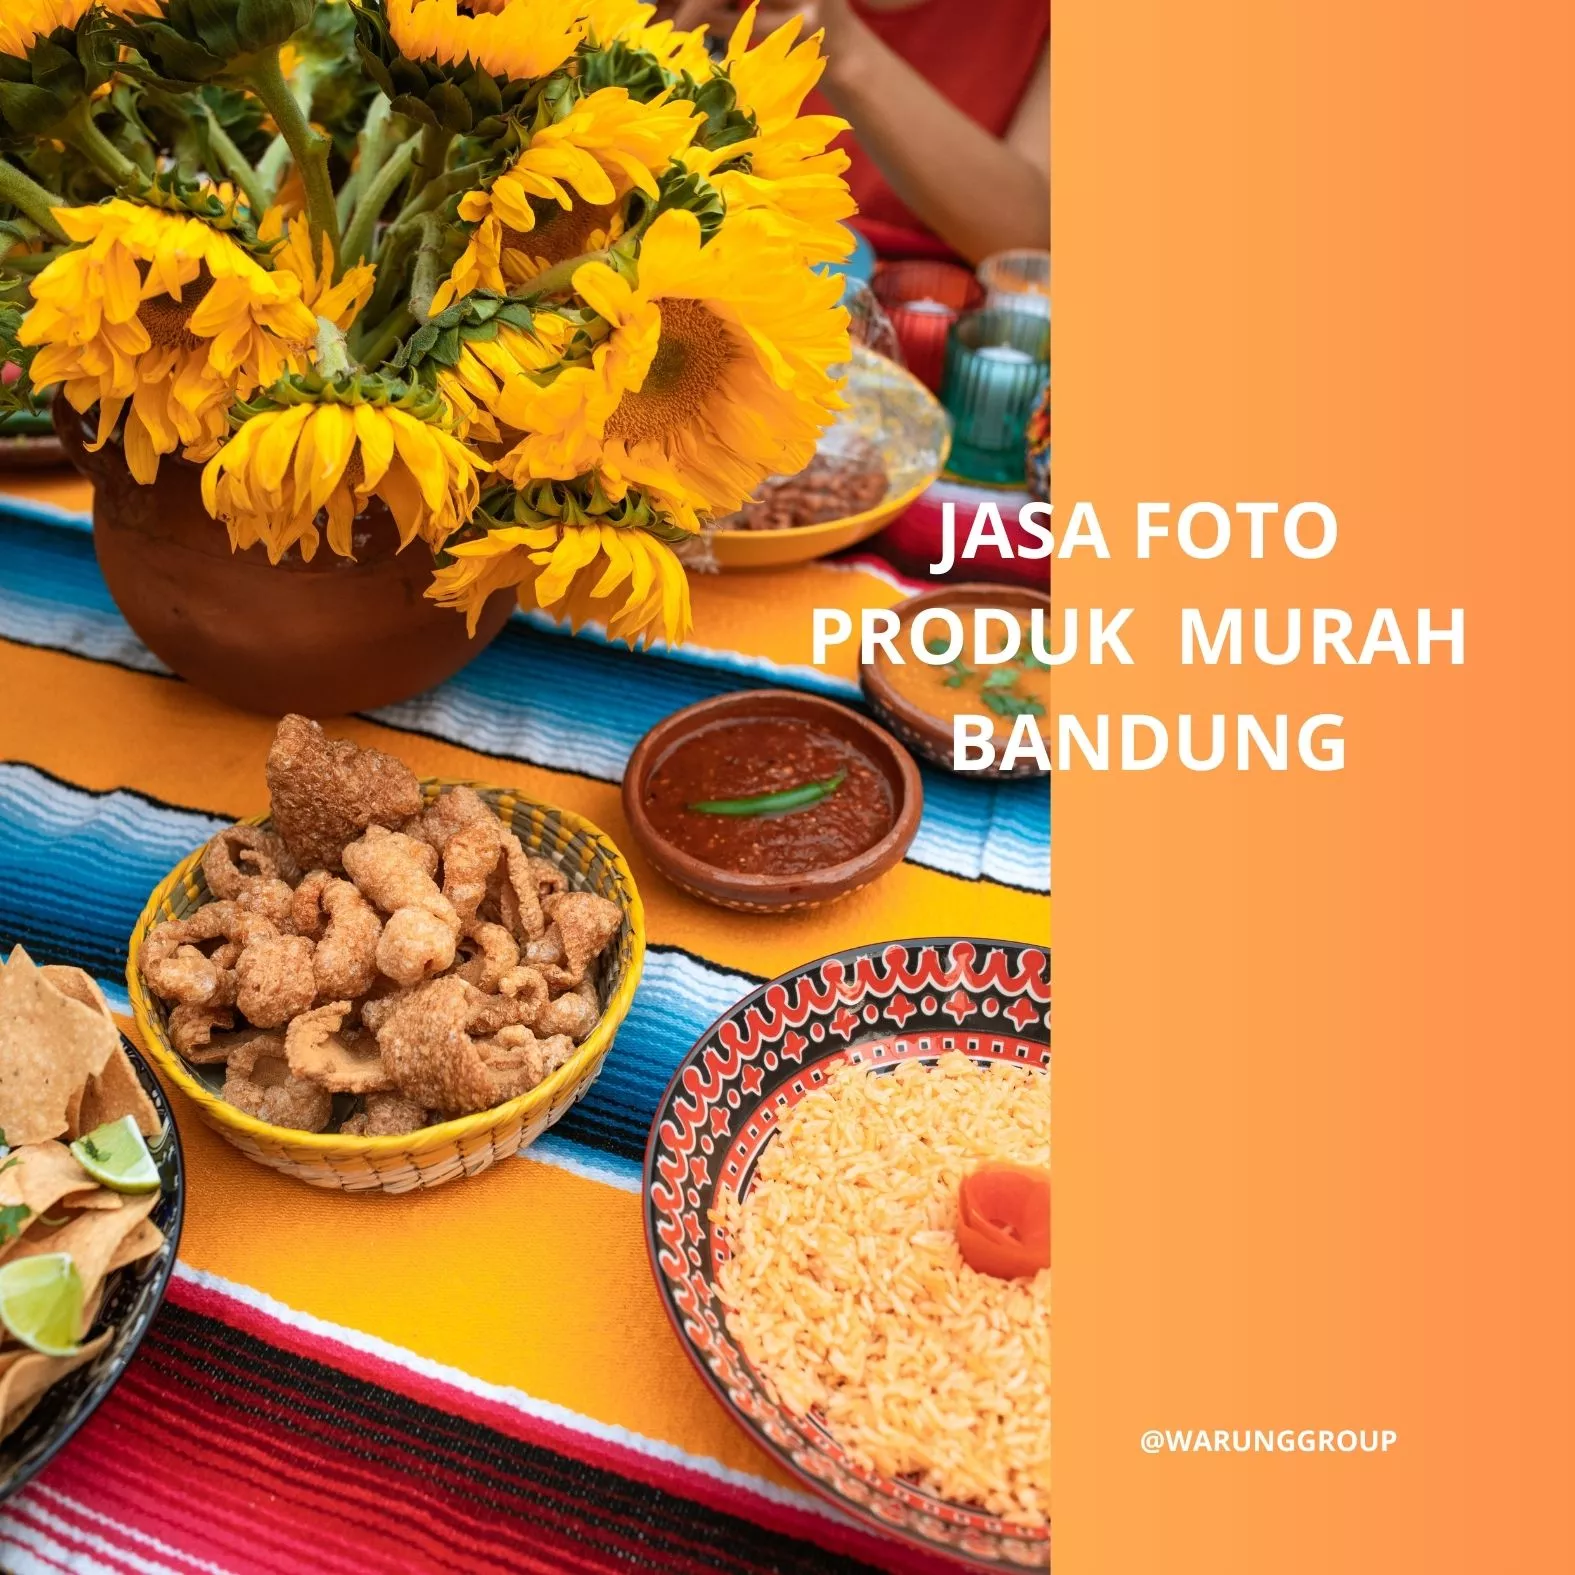 Pengertian Jasa Foto Produk Murah Bandung